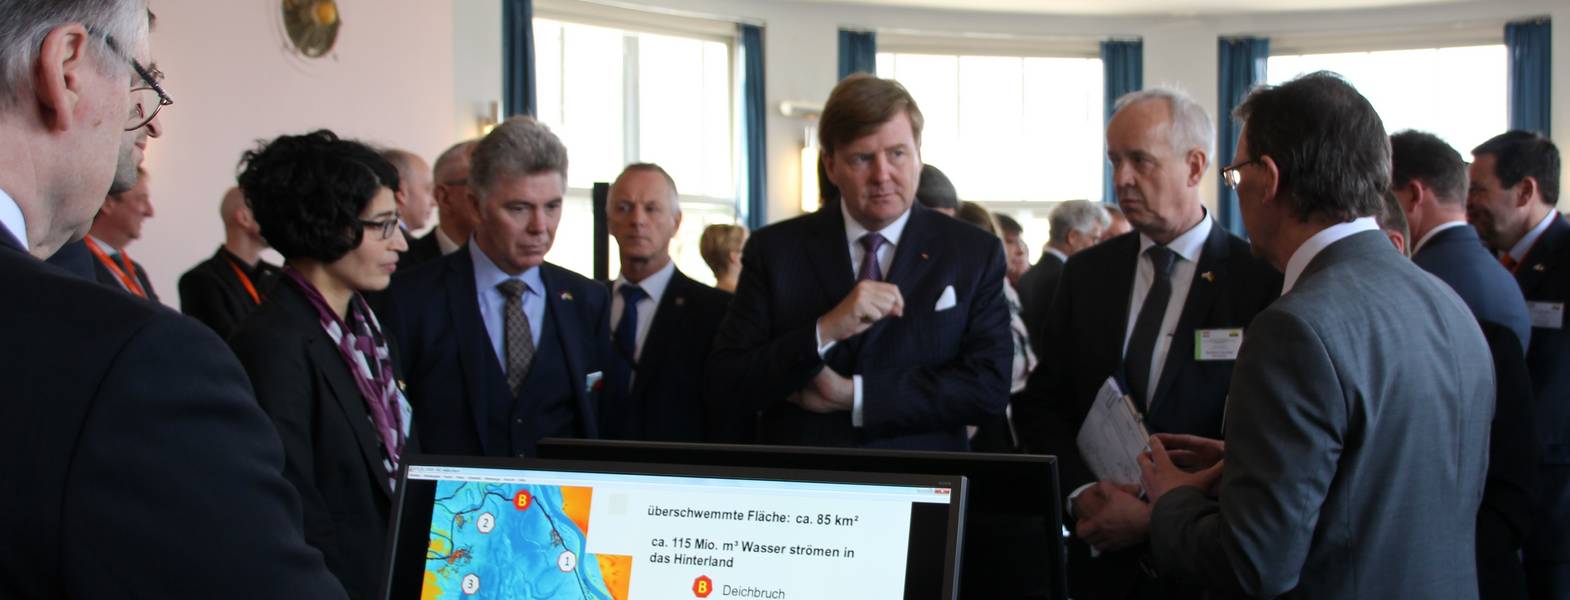 König Willem Alexander (Bildmitte) im Gespräch mit dem LHW